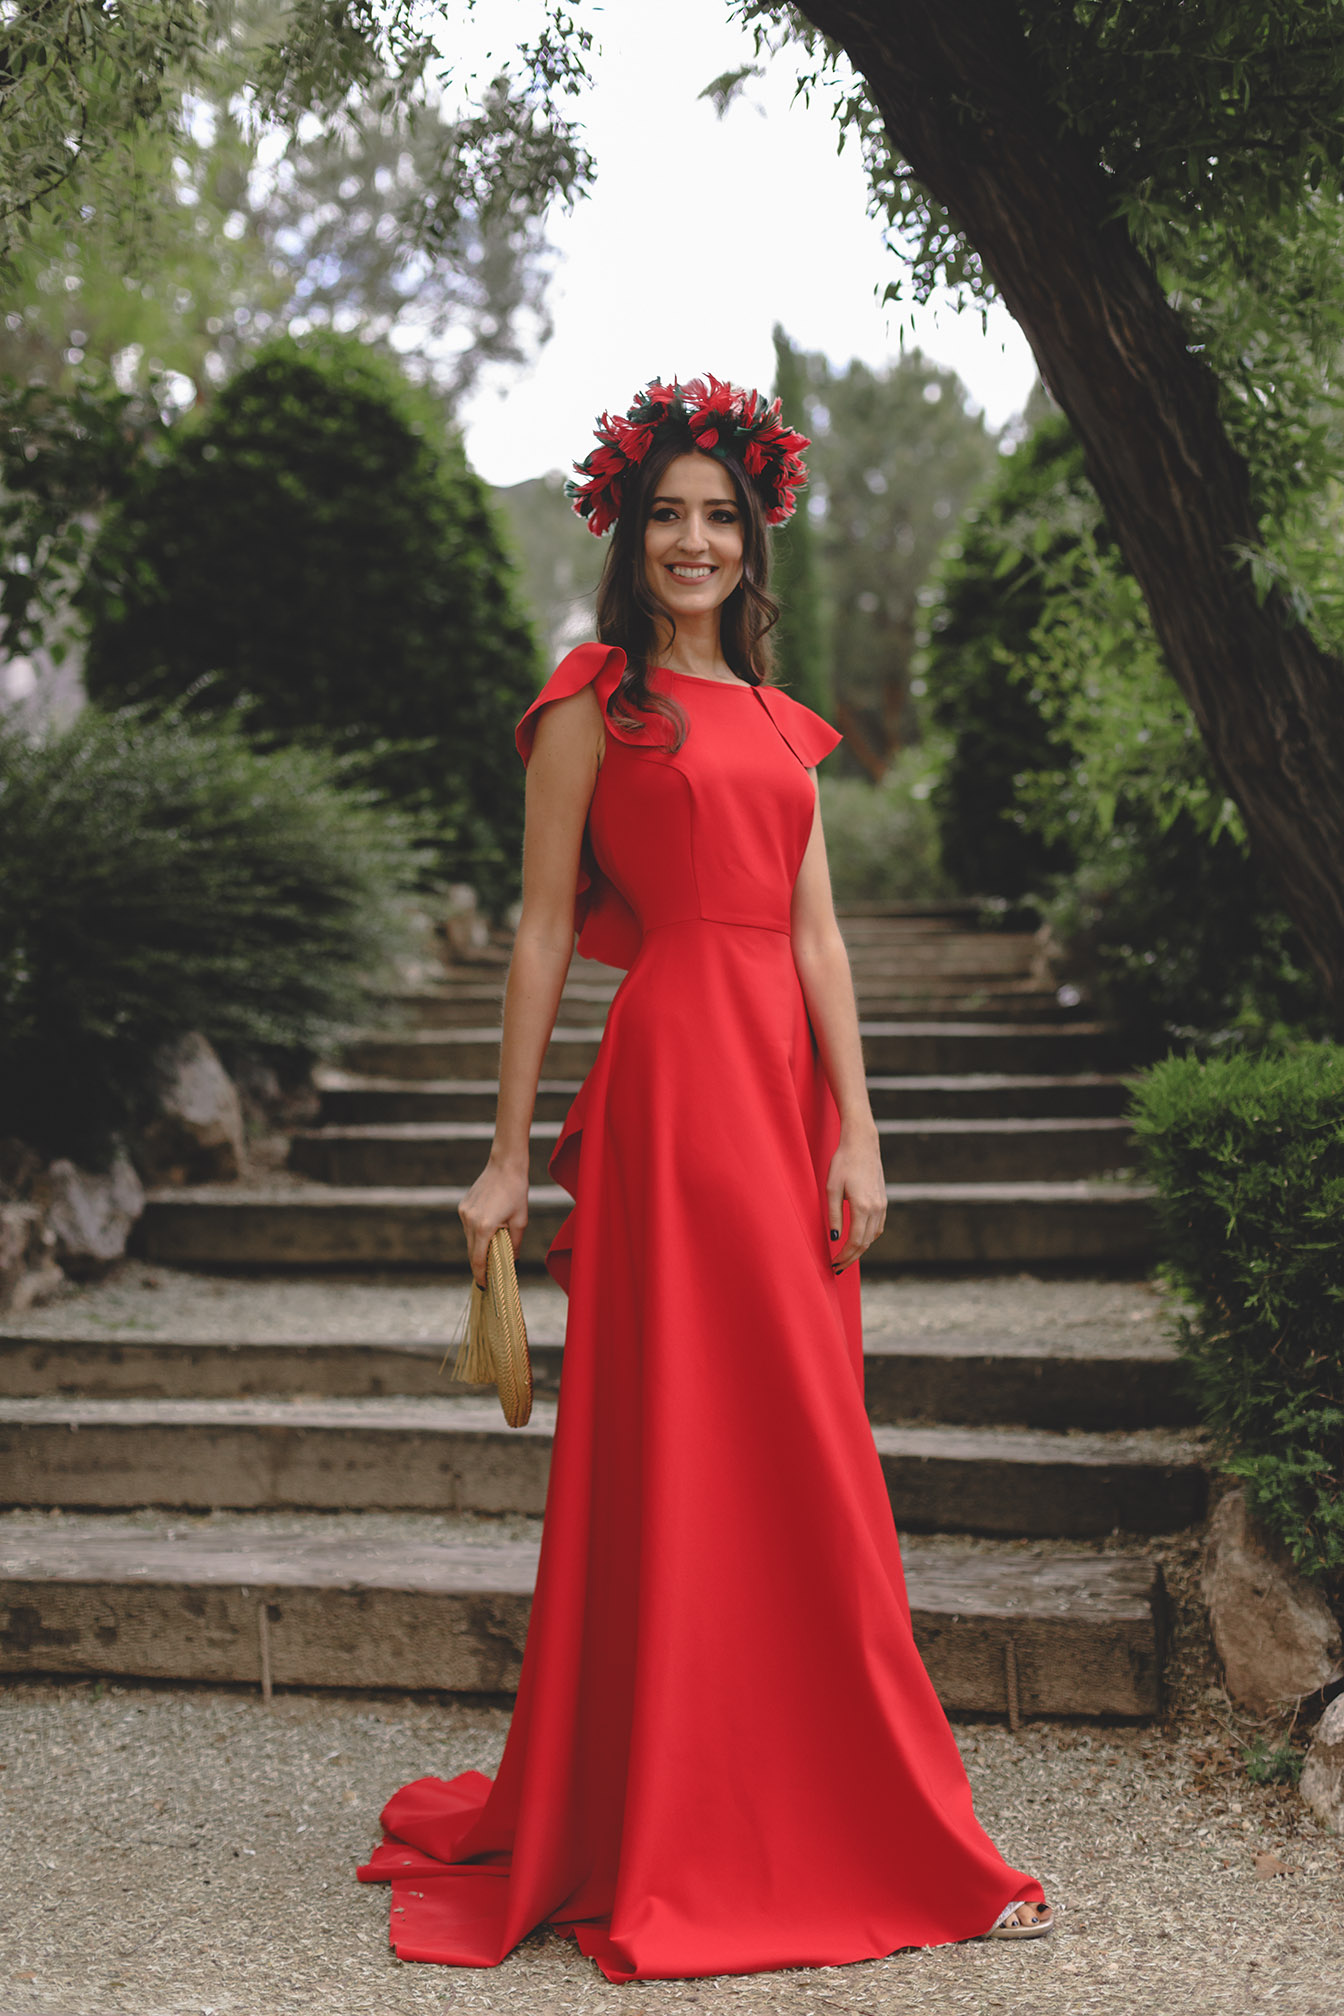 Look invitada boda noche 2018 vestido rojo espalda volantes tocado